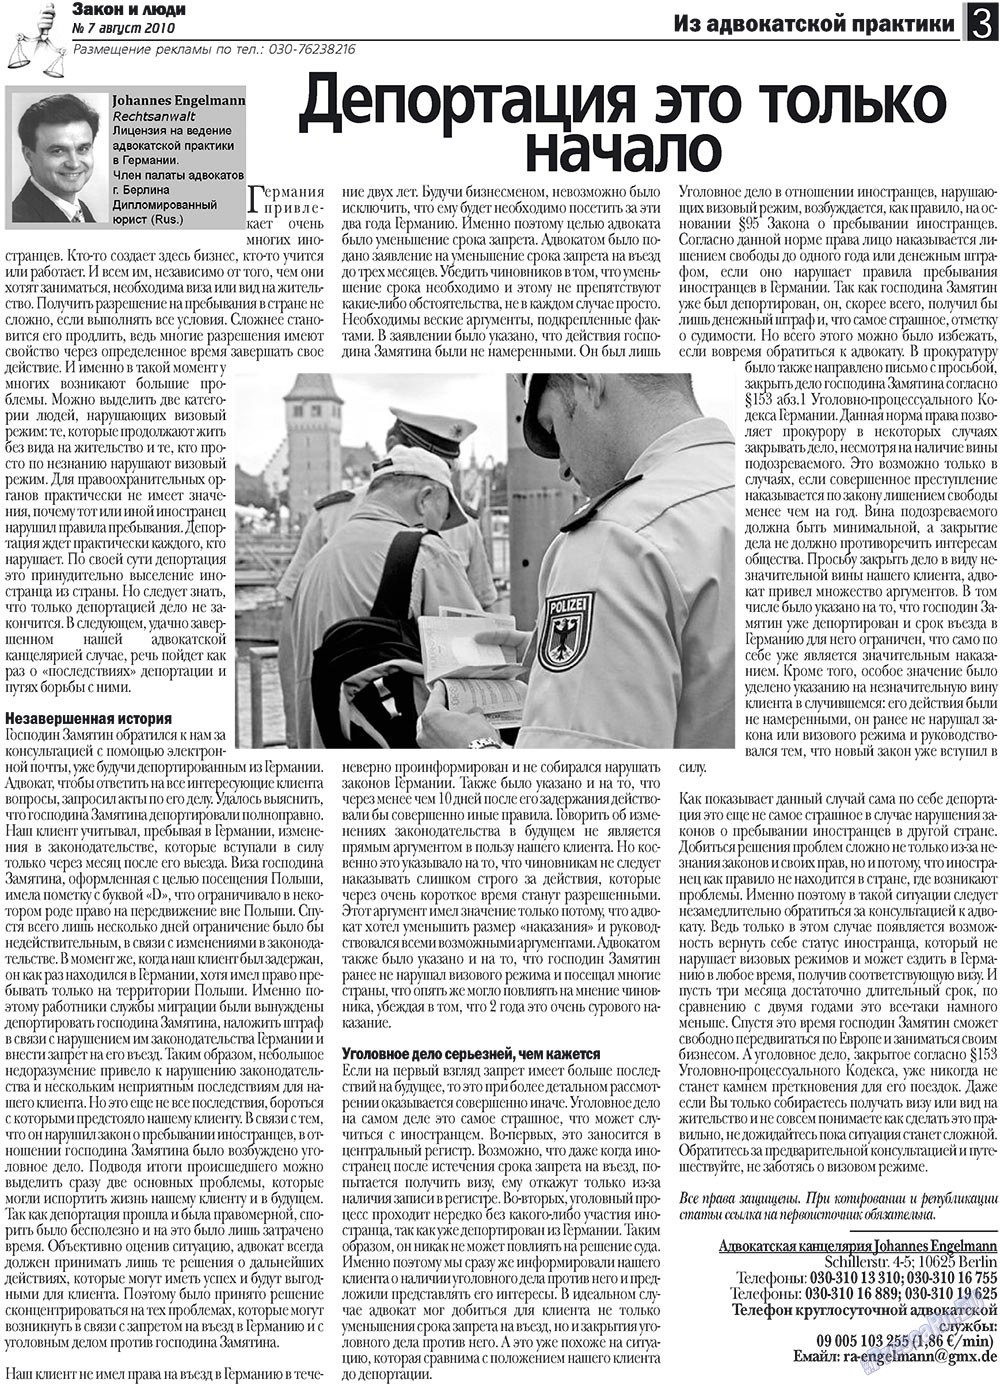 Закон и люди (газета). 2010 год, номер 7, стр. 3